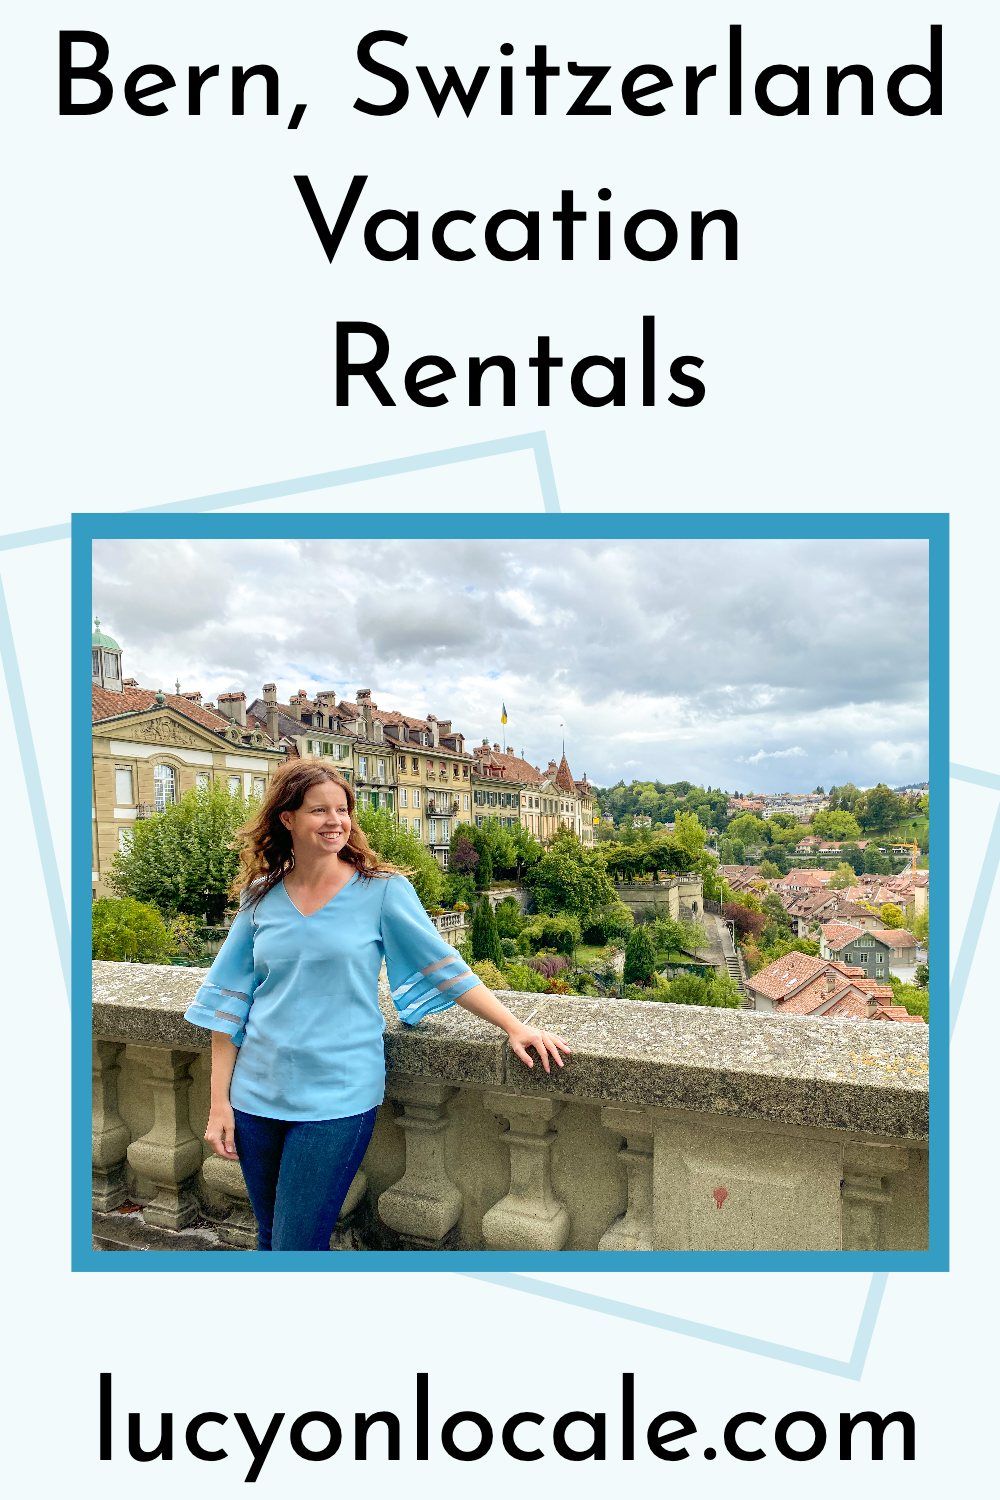 Bern, Switzerland vacation rentals